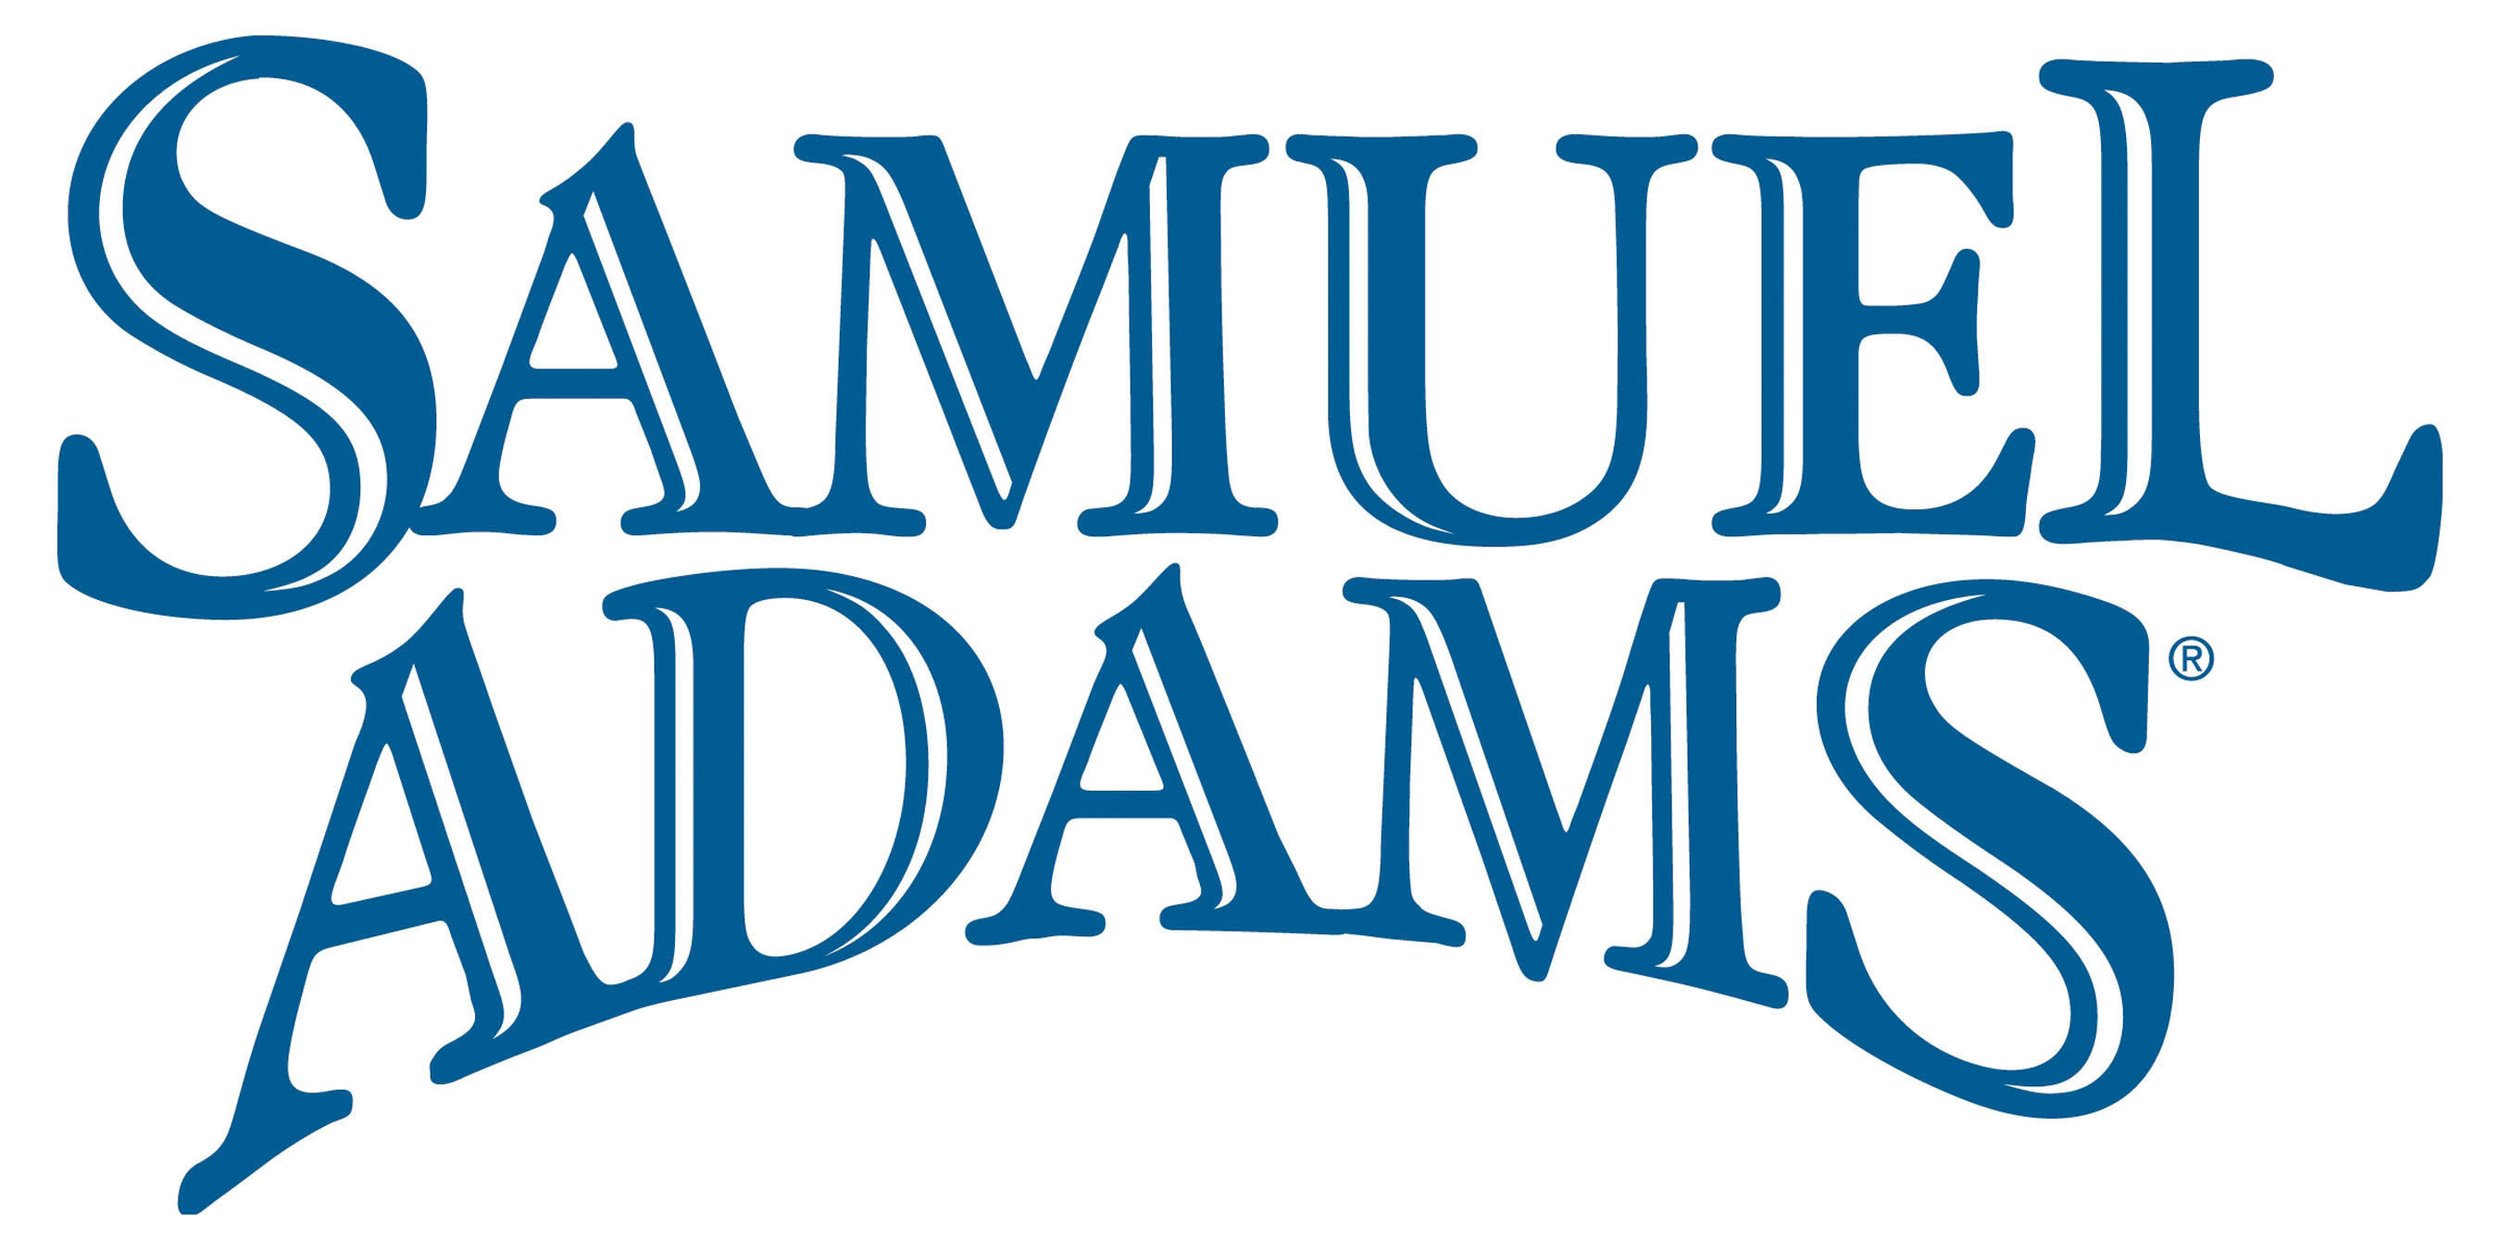 Samuel-Adams-logo.jpg